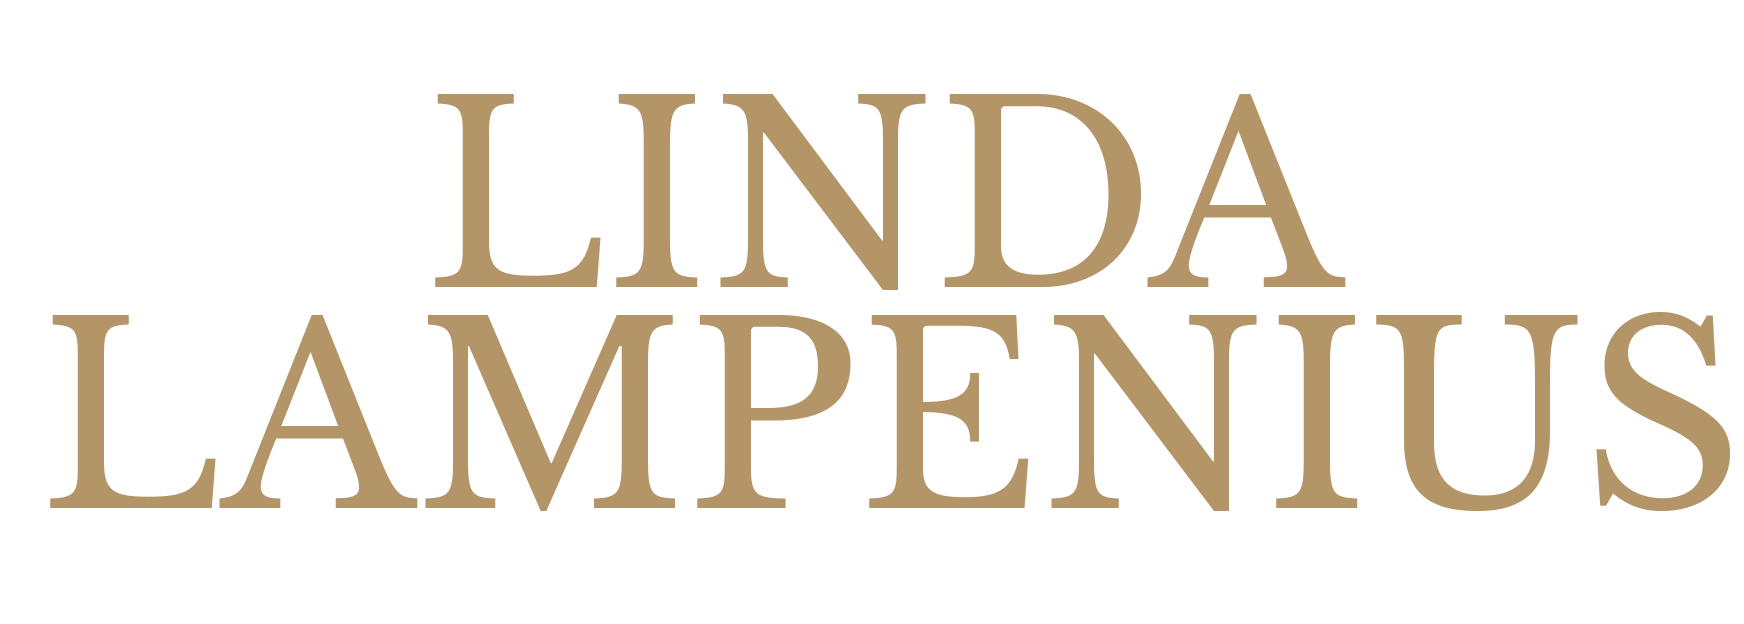 Linda Lampenius